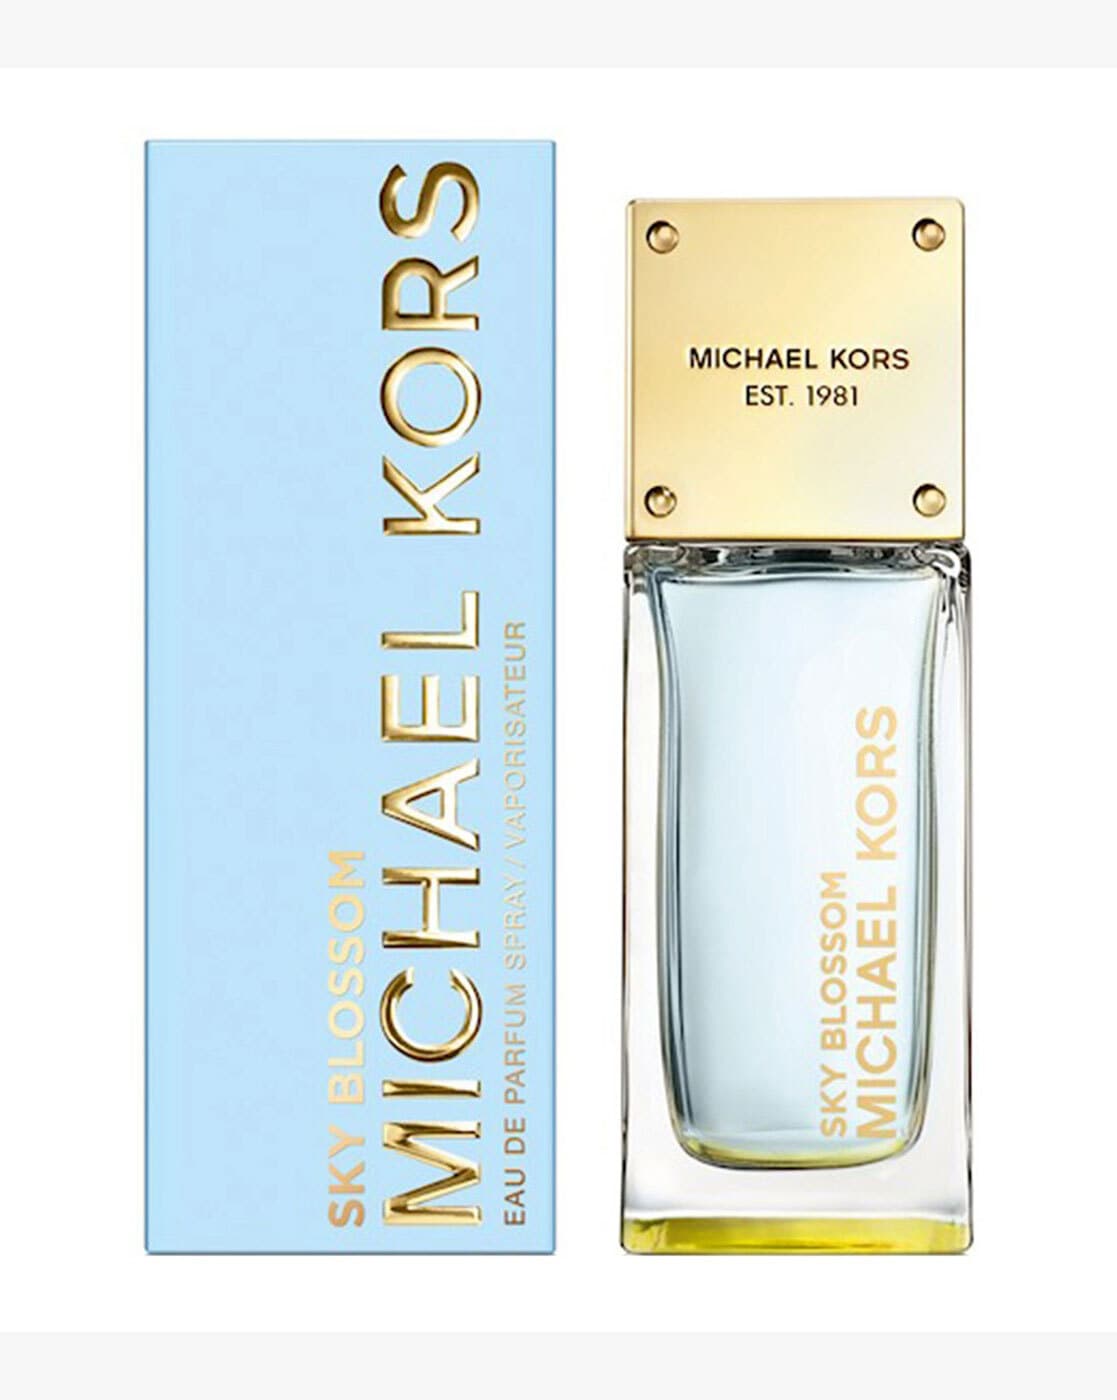 Buy Michael Kors Glam Ruby Eau De Parfum  100ml Online  Shop Beauty   Personal Care on Carrefour UAE